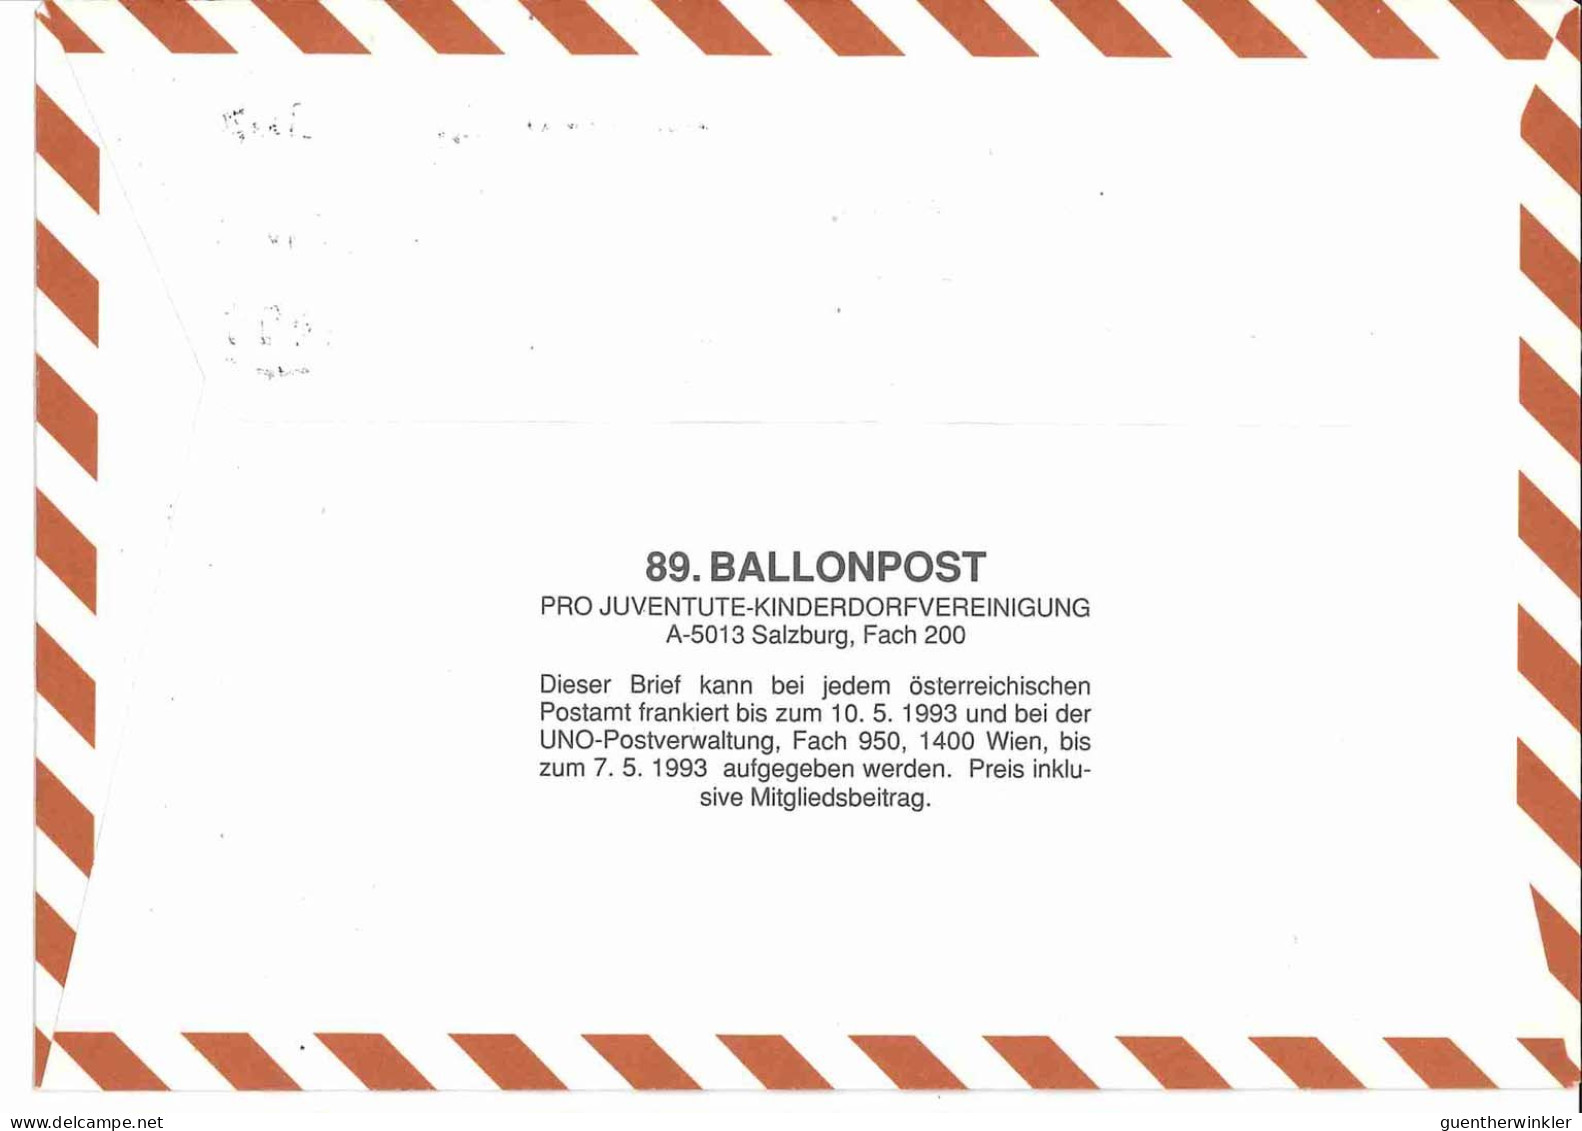 Regulärer Ballonpostflug Nr. 89b Der Pro Juventute [RBP89.] - Ballonpost